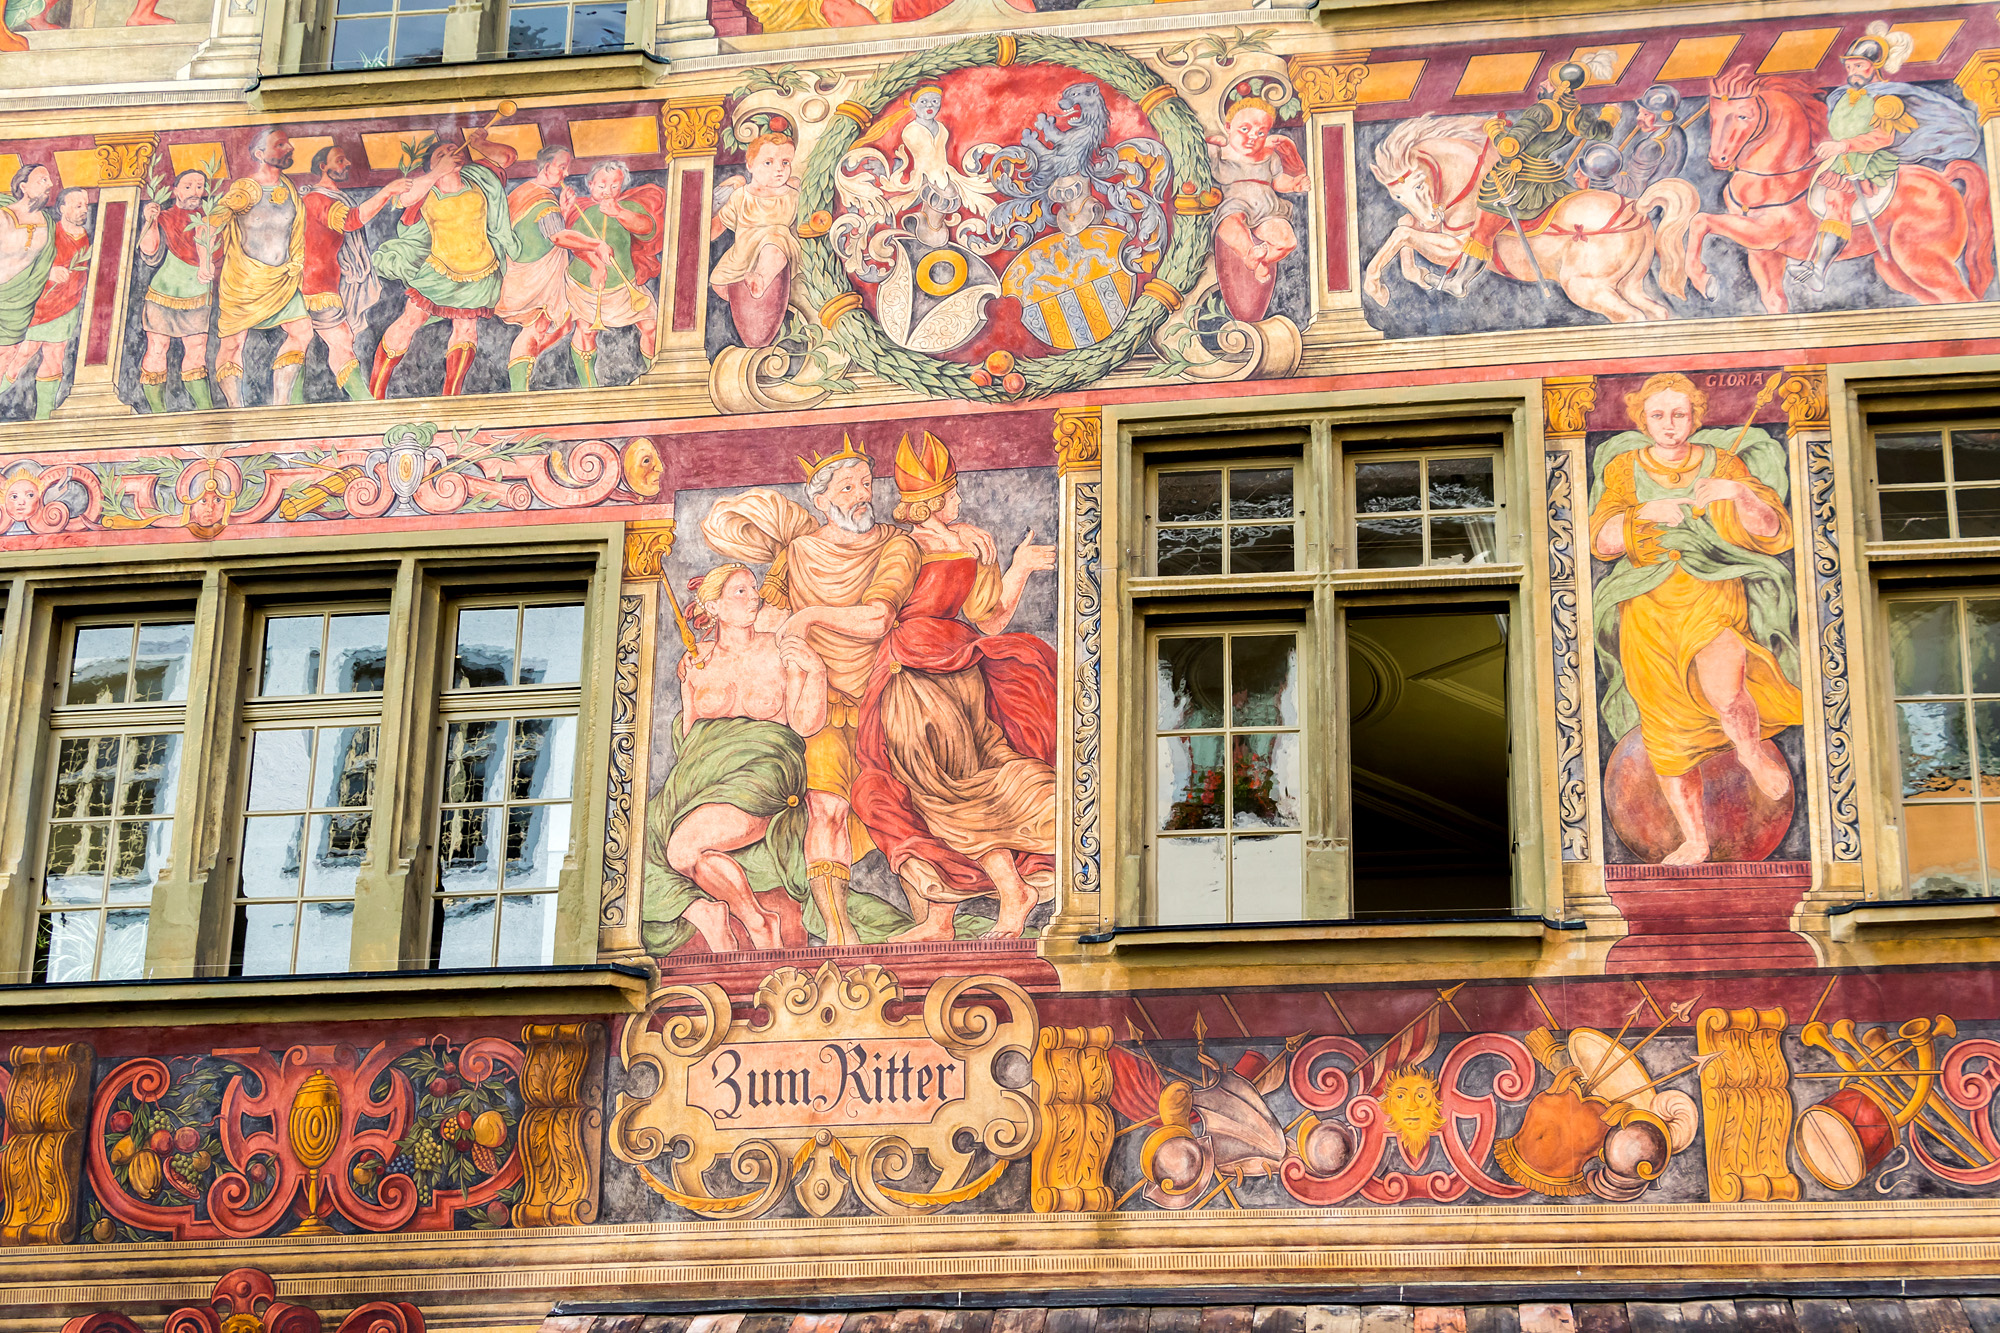 Fantastische Fassadenmalereien am Bürgerhaus "Zum Ritter". Das Haus wurde 1492 erbaut; die Verzierungen, welche als die bedeutendsten Renaissancefresken nördlich der Alpen gelten, wurden um das Jahr 1570 angebracht.